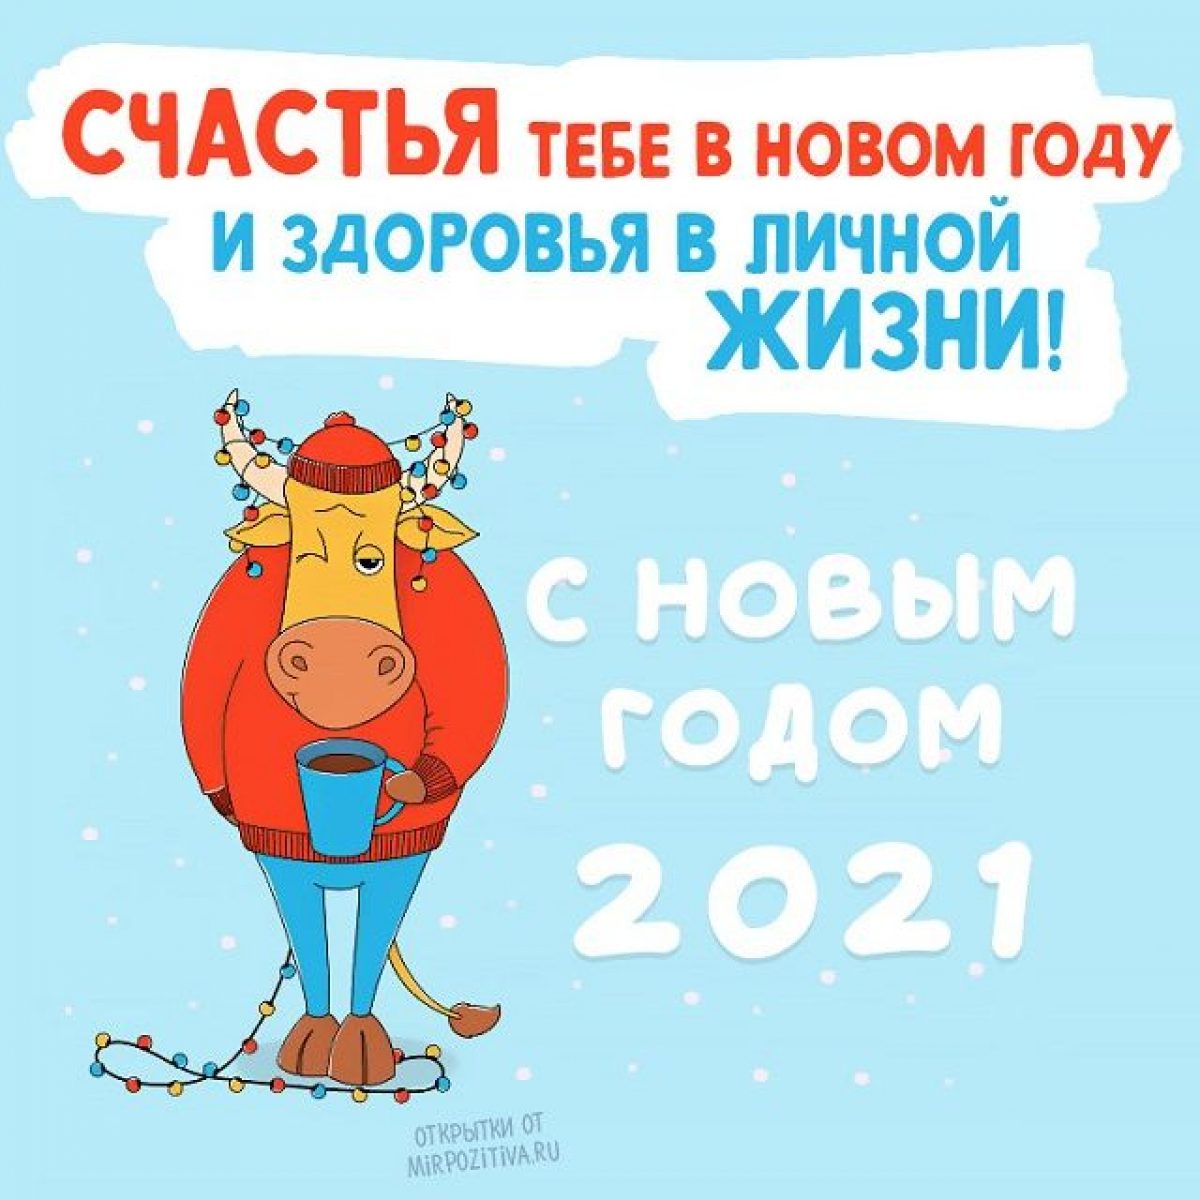 Смешные новогодние поздравления 2021